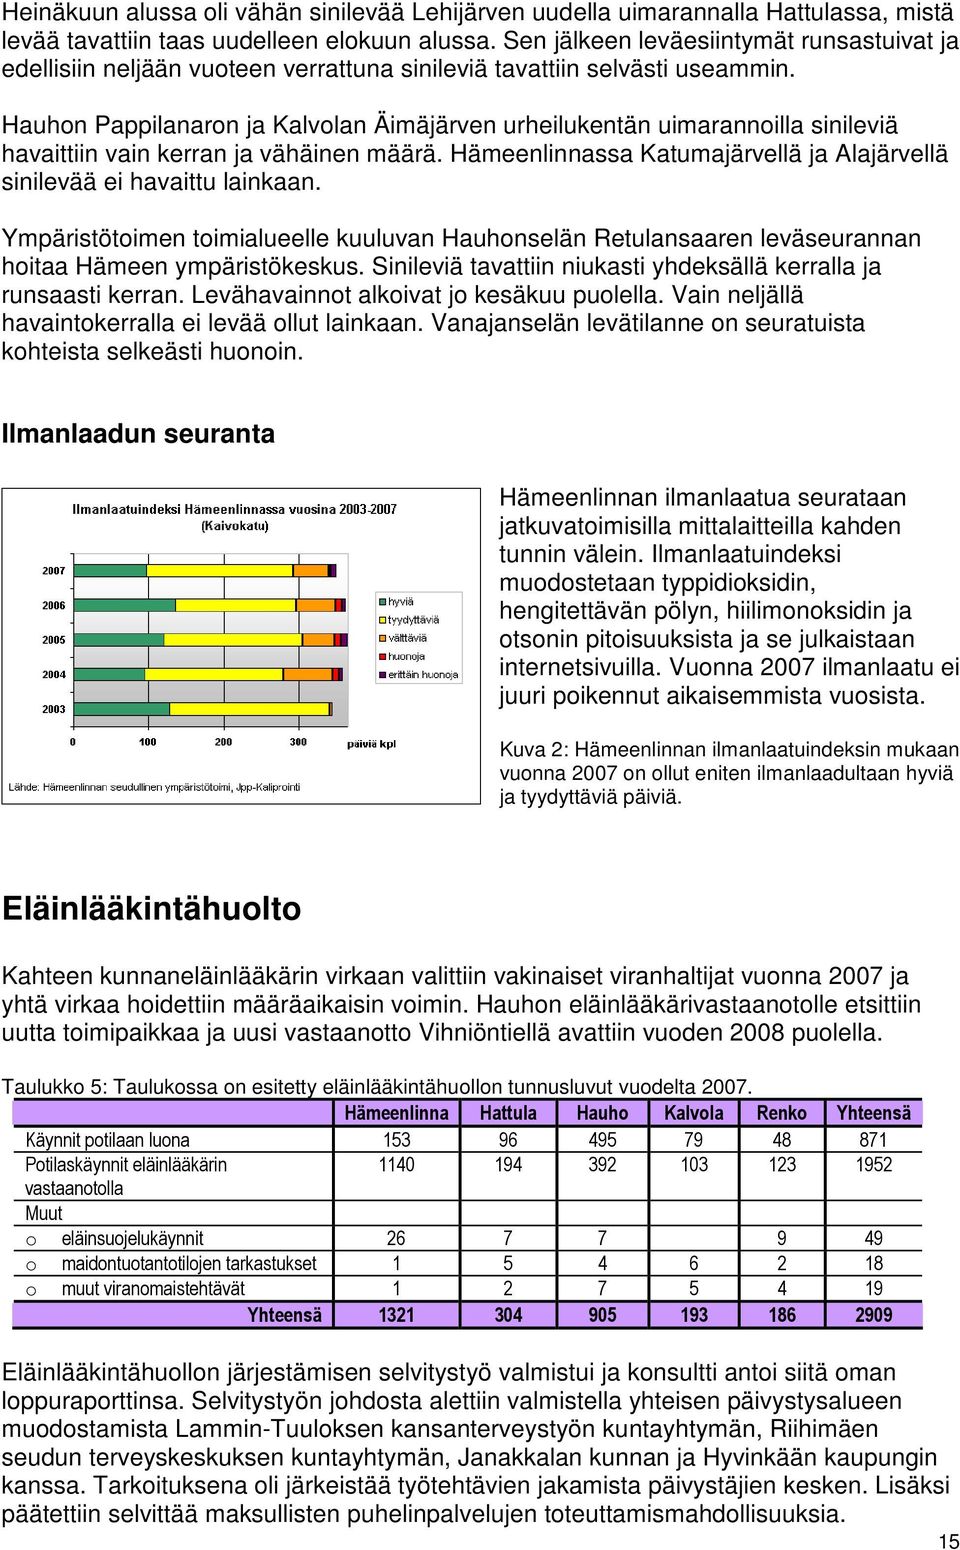 Hauhn Pappilanarn ja Kalvlan Äimäjärven urheilukentän uimarannilla sinileviä havaittiin vain kerran ja vähäinen määrä. Hämeenlinnassa Katumajärvellä ja Alajärvellä sinilevää ei havaittu lainkaan.